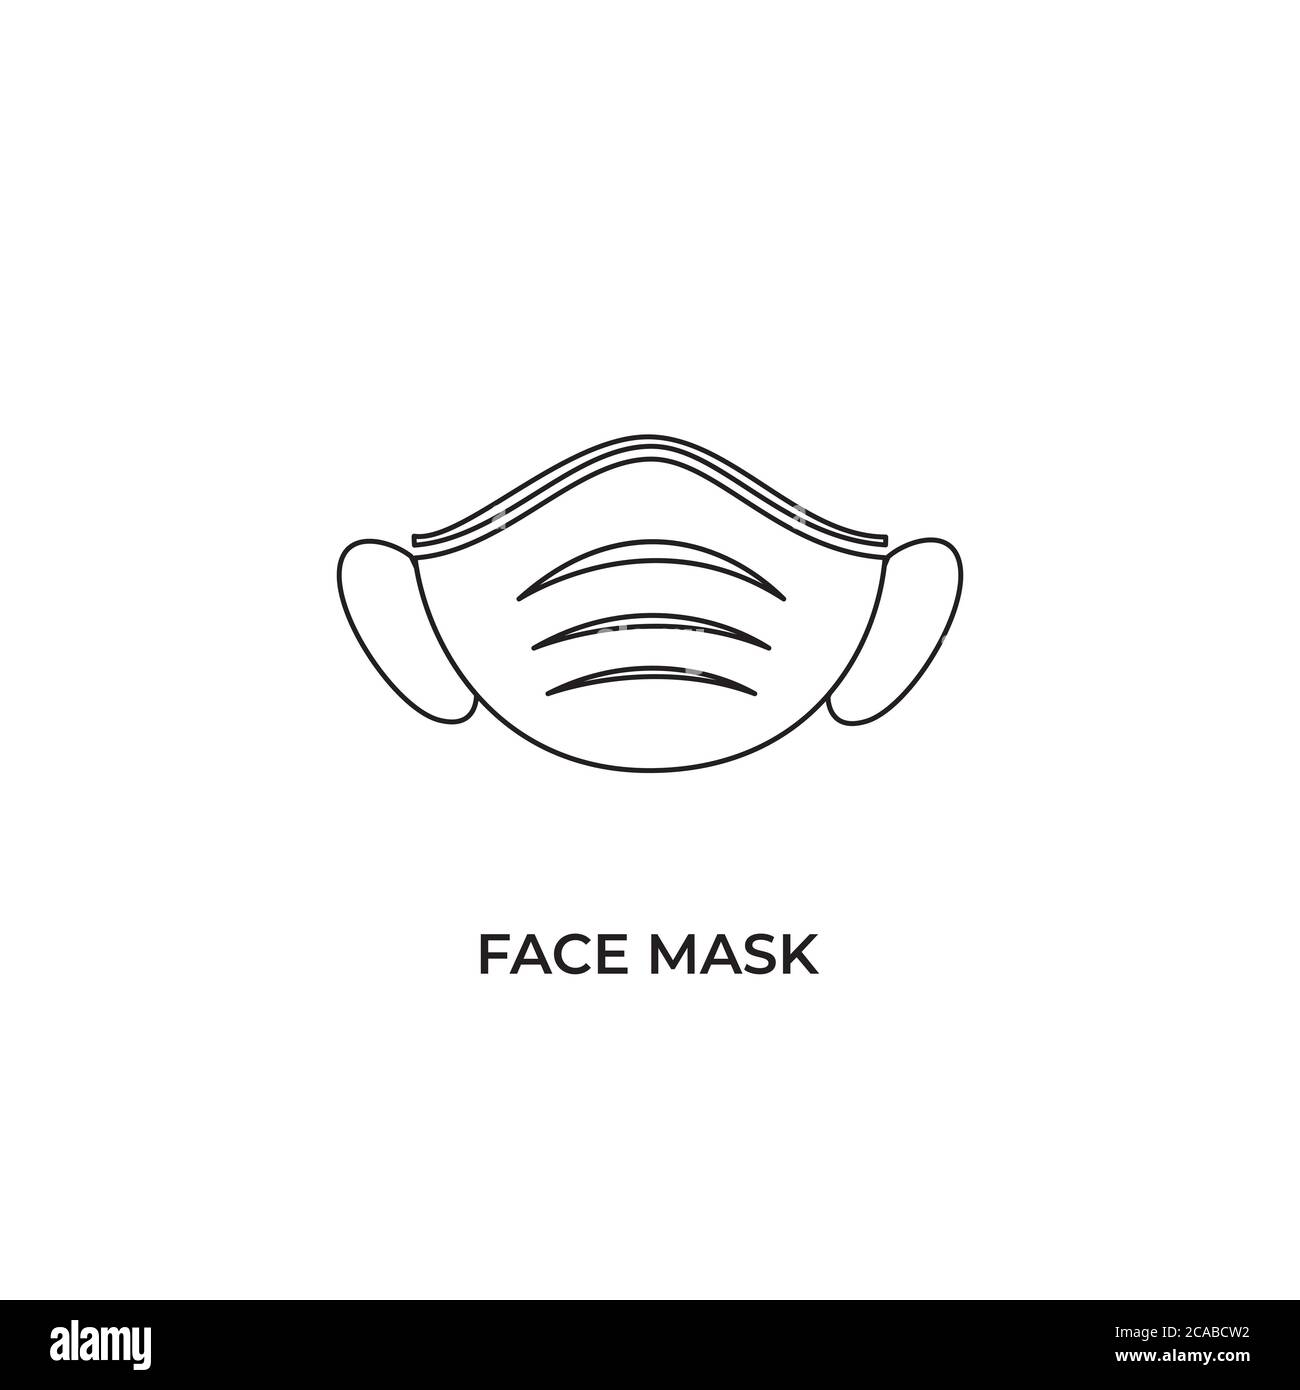 Icona maschera facciale. Maschera chirurgica o medica protettiva. Maschera facciale necessaria locale Firma, Avviso per la sicurezza, copertura del viso. Indossare una maschera facciale Illustrazione Vettoriale